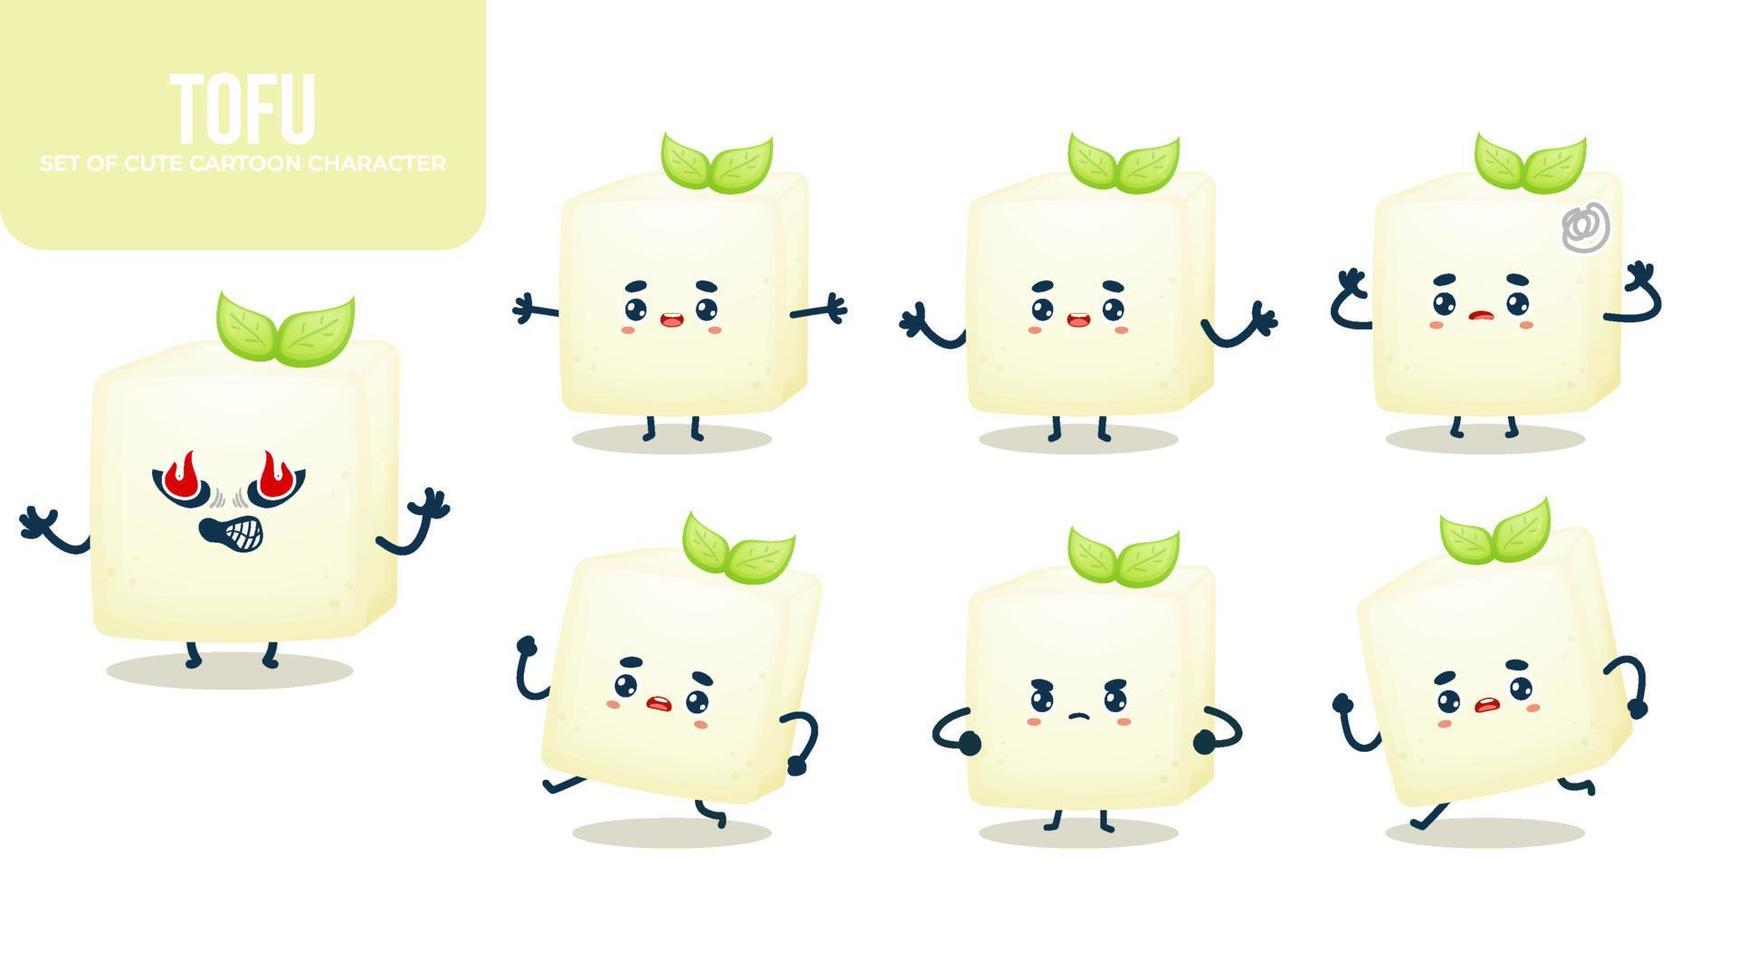 conjunto de lindo personaje de dibujos animados de tofu con diferentes poses vector premium